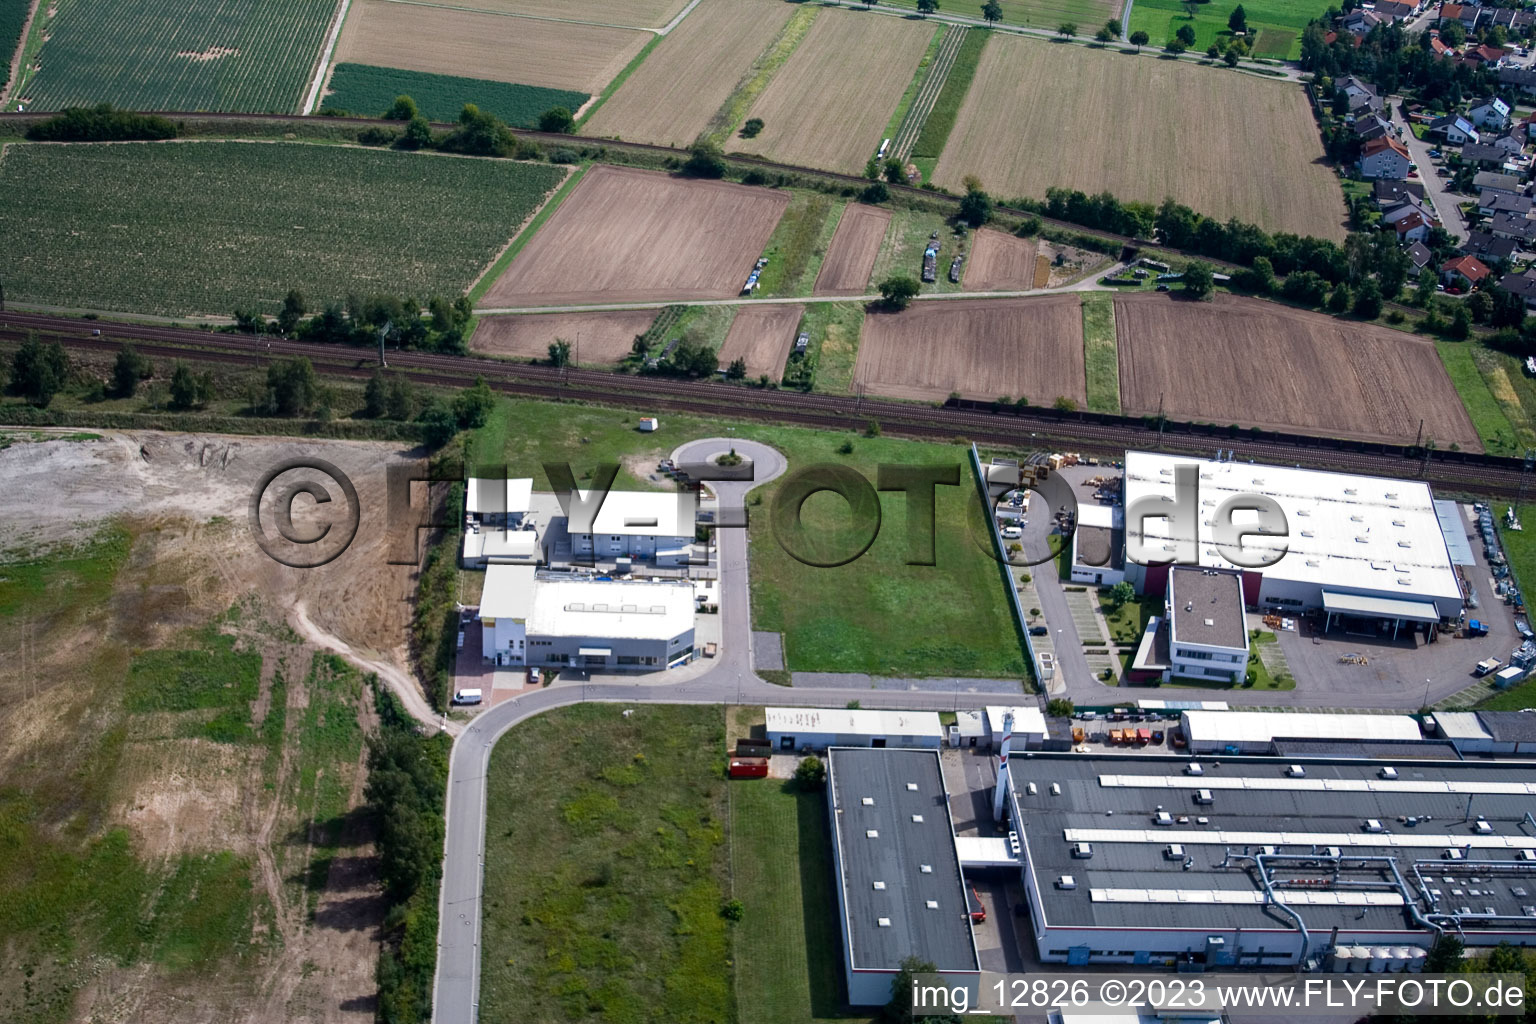 Quartier Neudorf in Graben-Neudorf dans le département Bade-Wurtemberg, Allemagne vu d'un drone